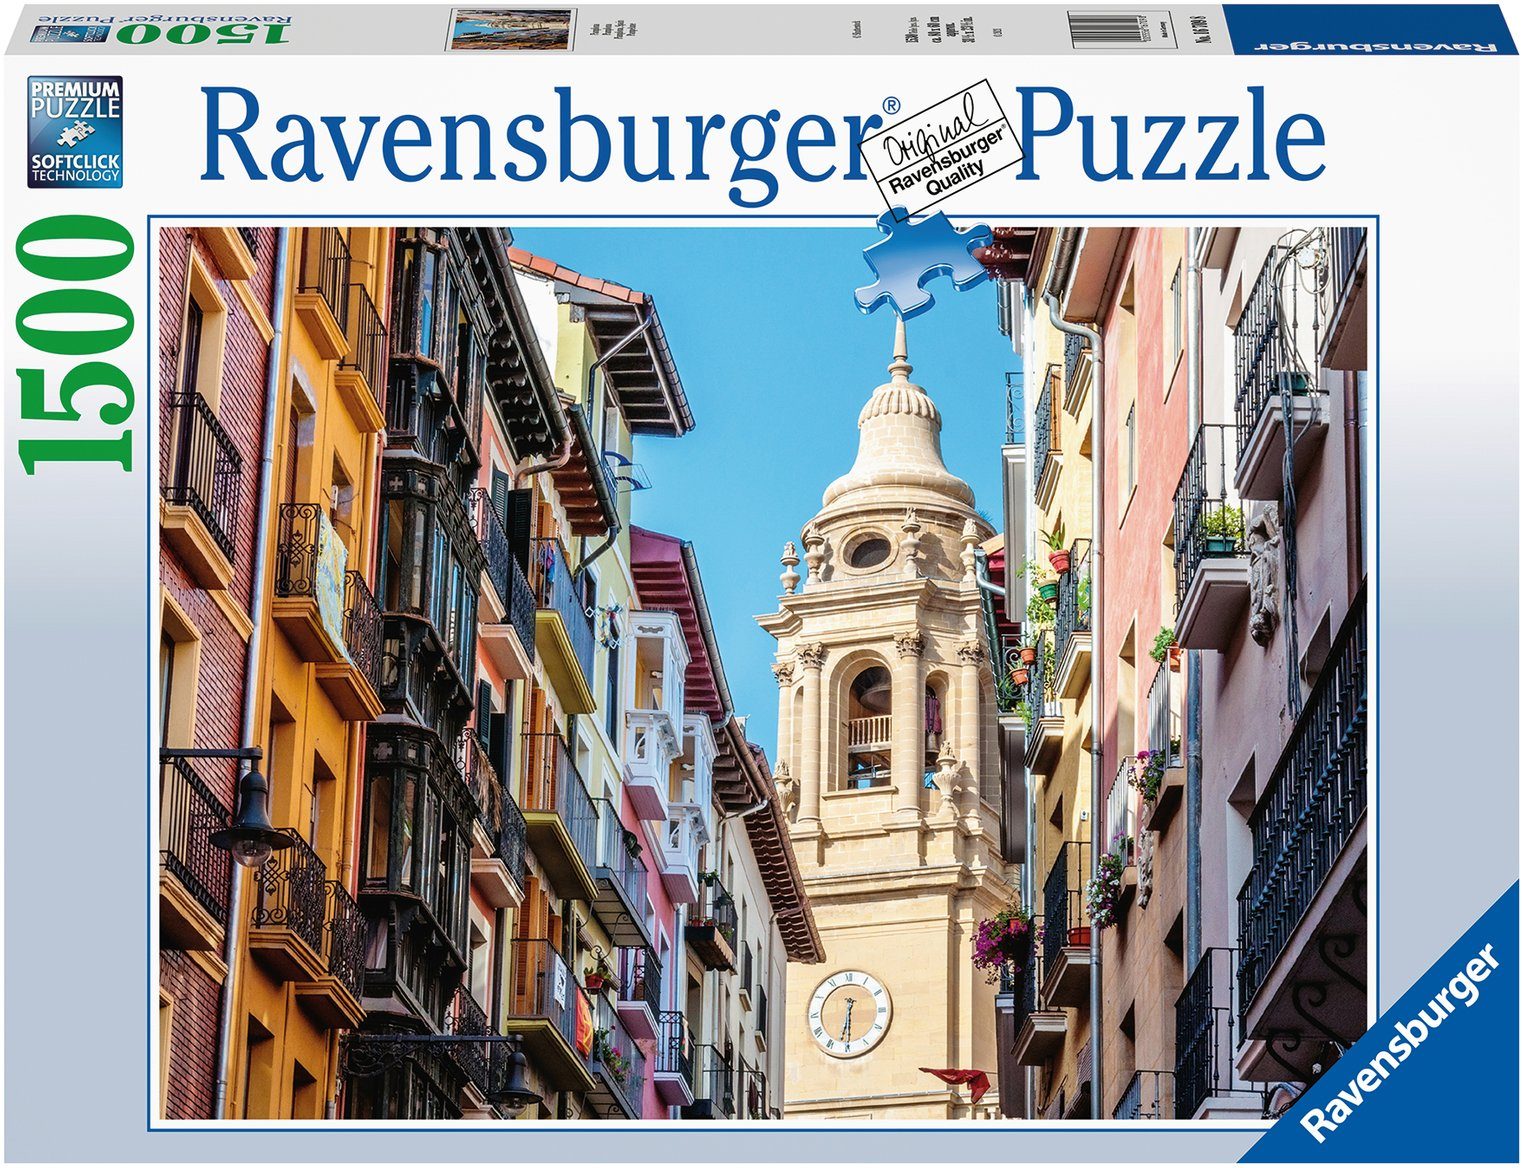 Ravensburger Puzzle Pamplona, 1500 Puzzleteile, Made in Germany, FSC® - schützt Wald - weltweit